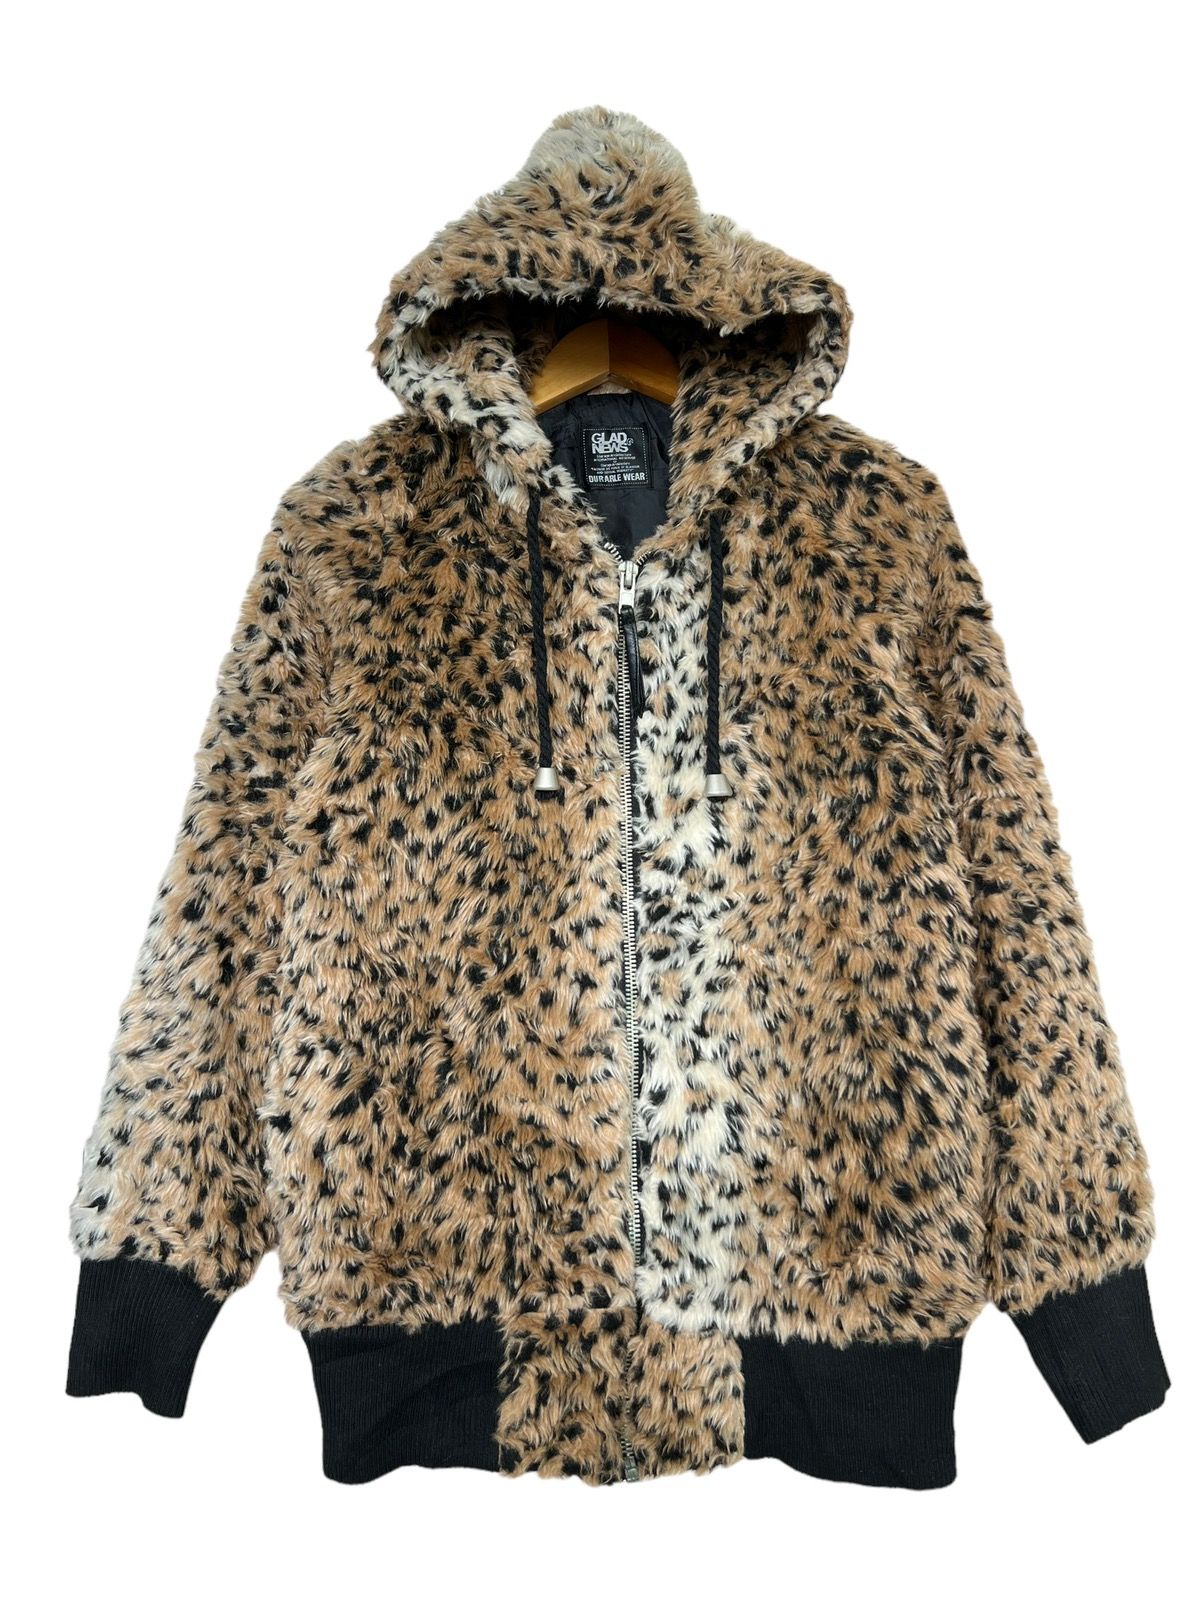 Japanese Brand - Glad News Leopard Fur Zip Up Hoodie - 1